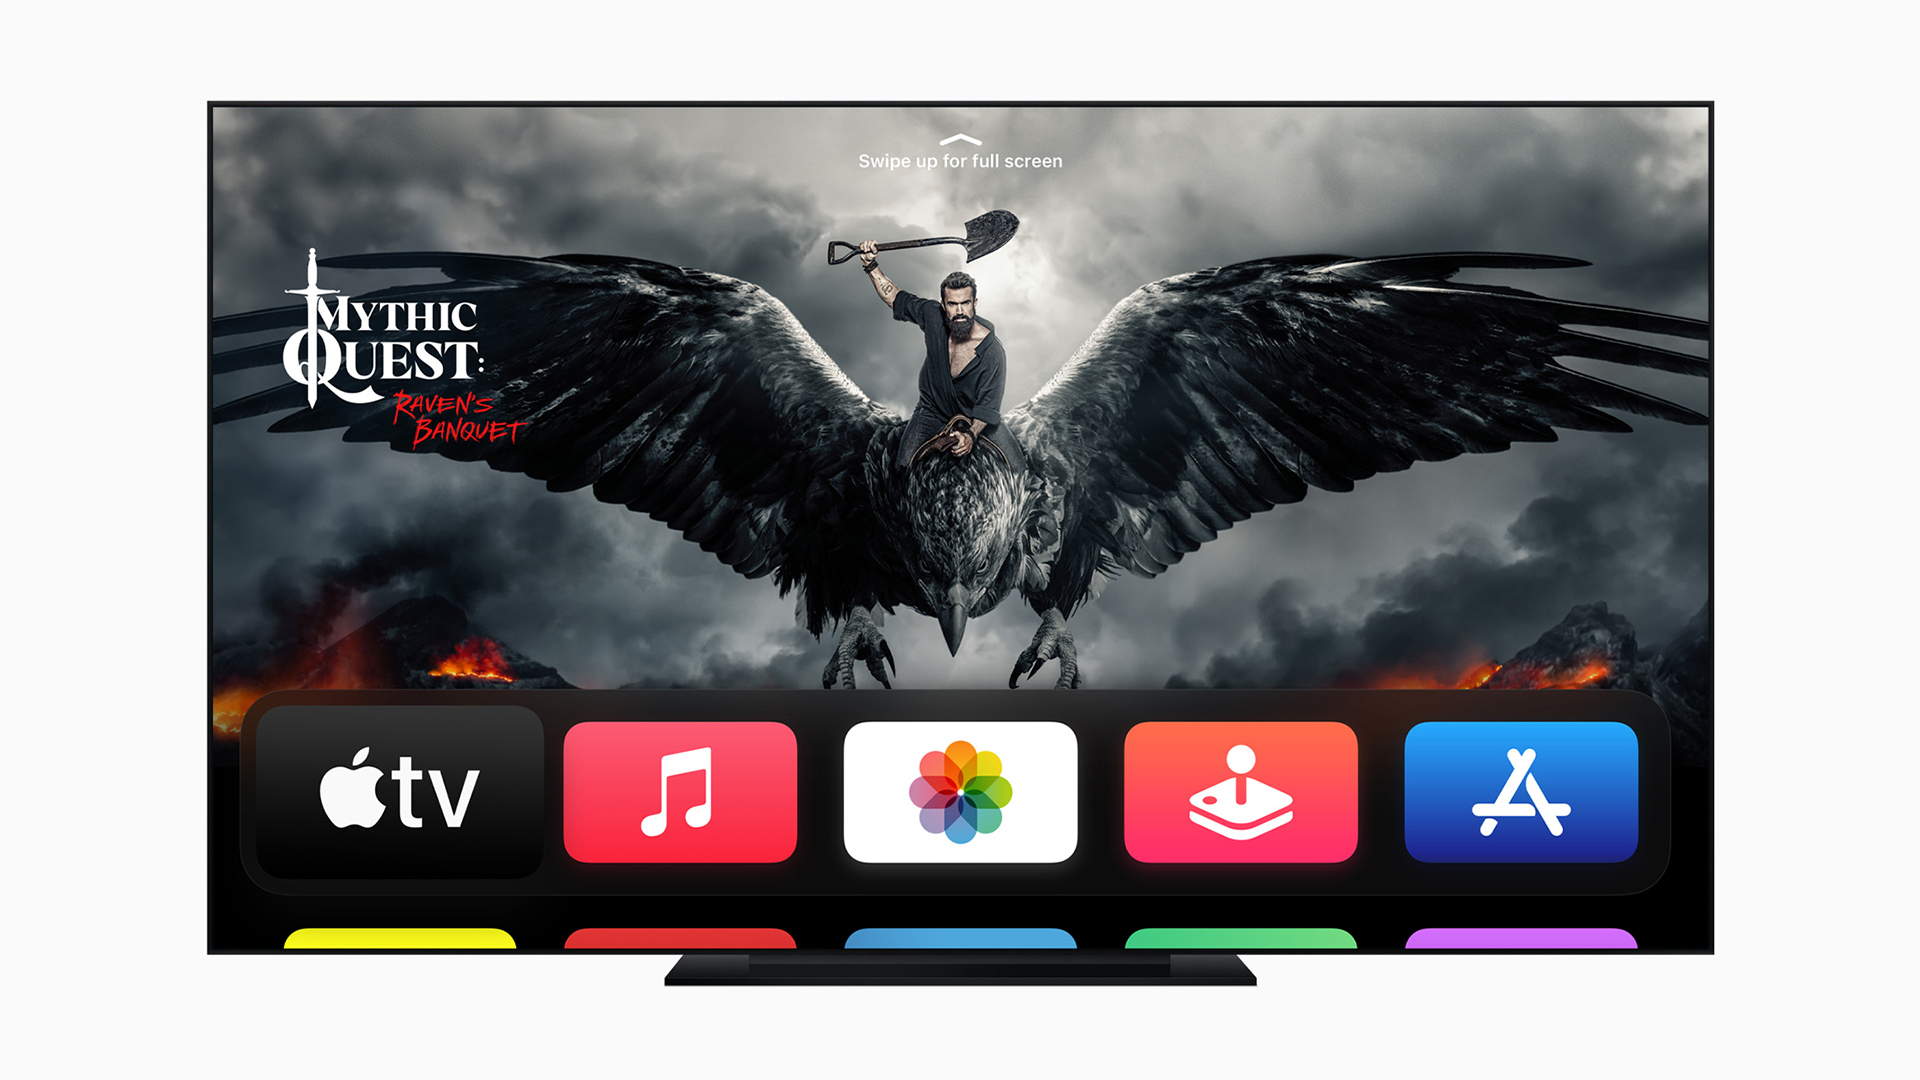 Ý kiến: Bây giờ là lúc để Apple để phát hành một Apple TV mới 1